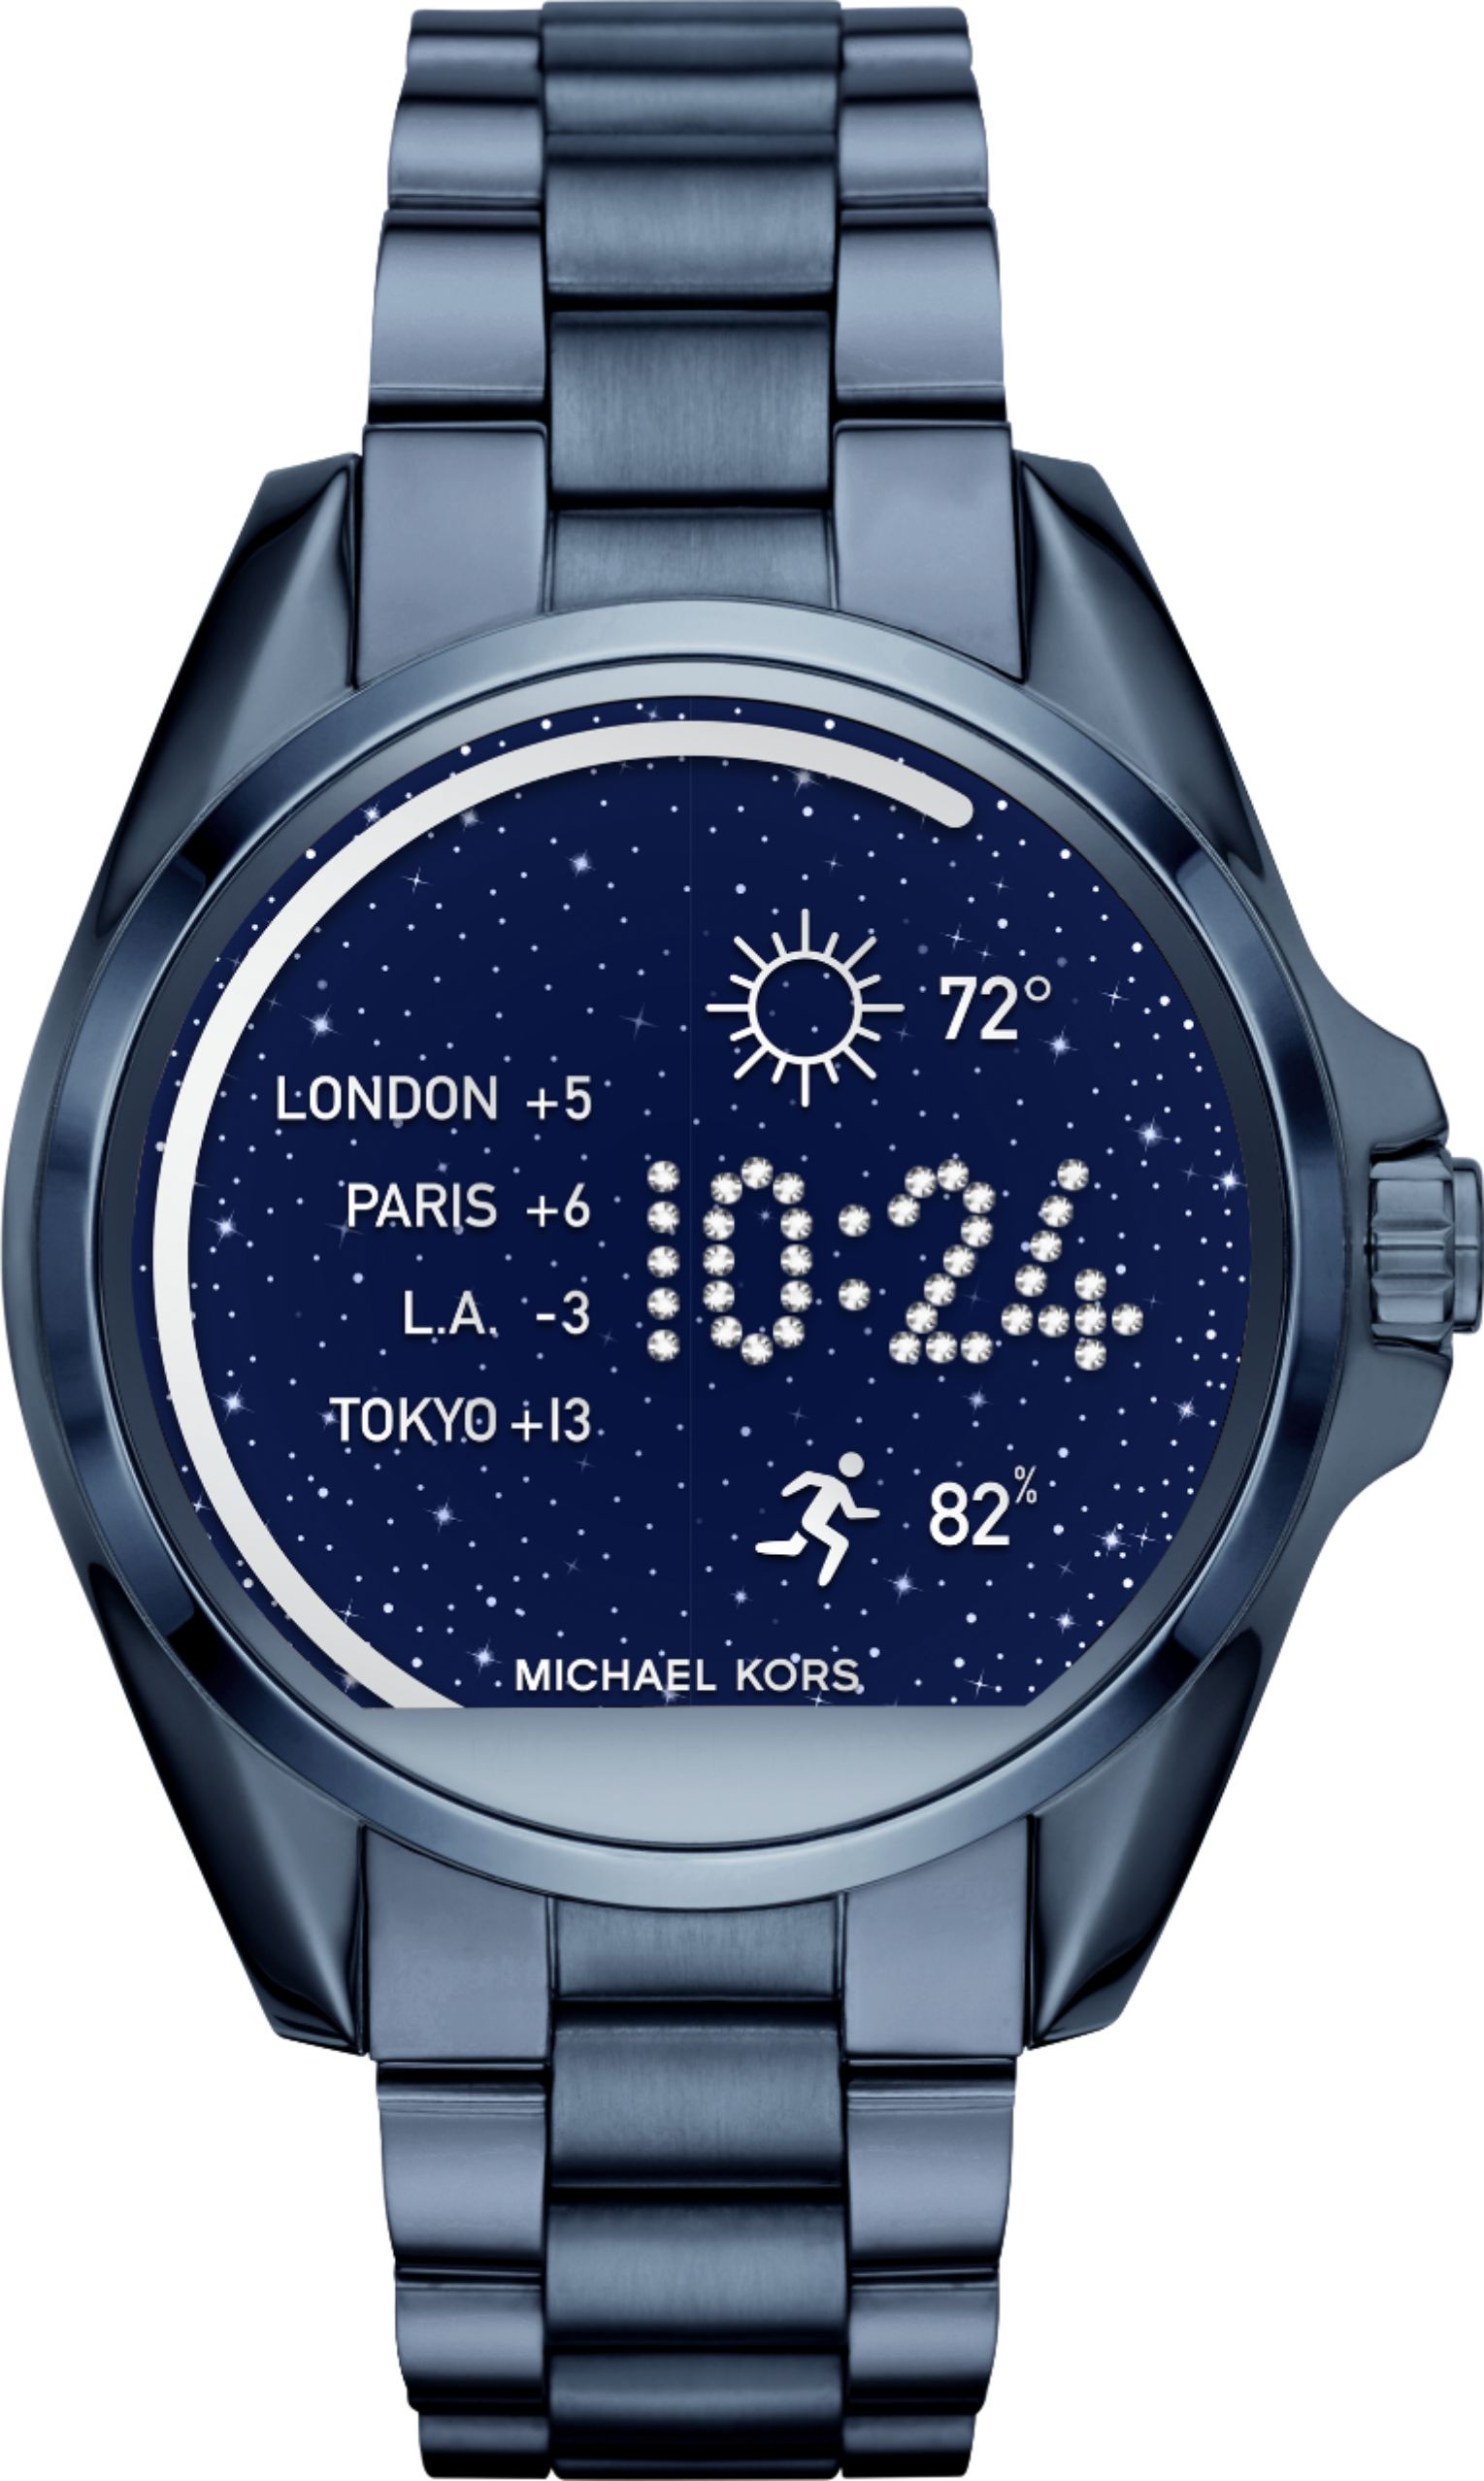 michael kors access smart watches